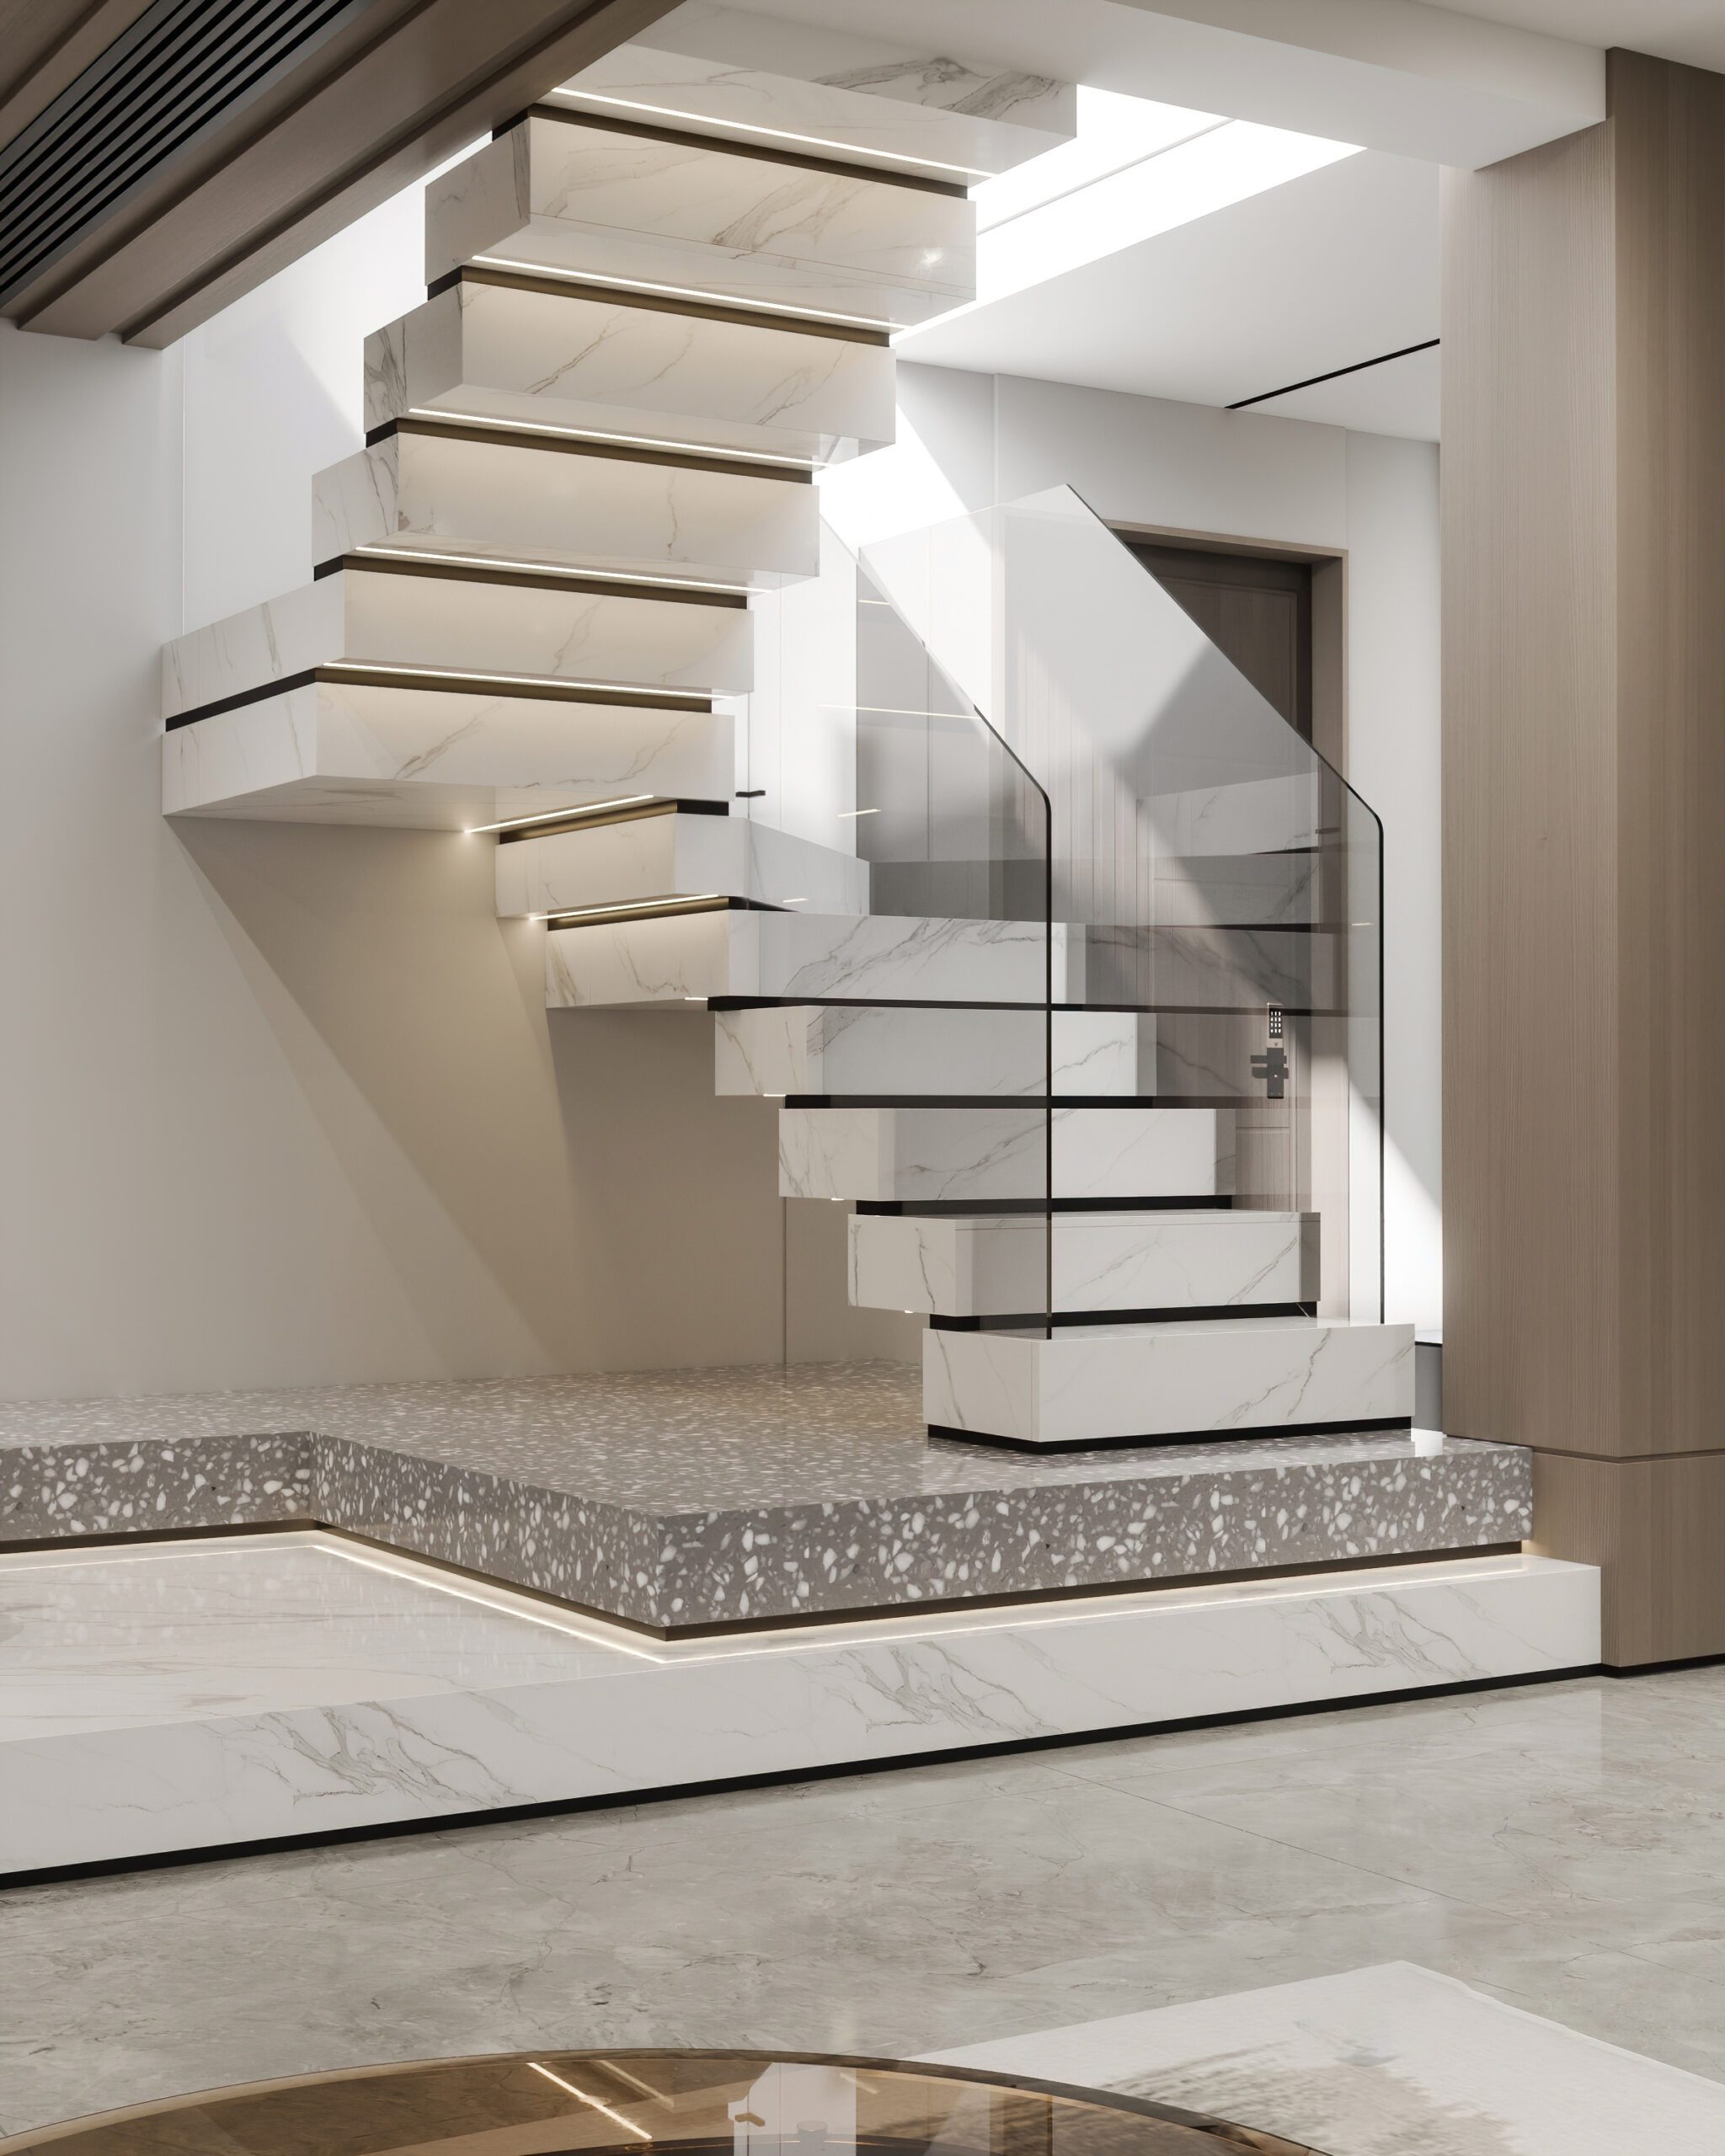 樓梯下方空間可以設計為展示區，也可以依照屋主的需求規劃成收納區